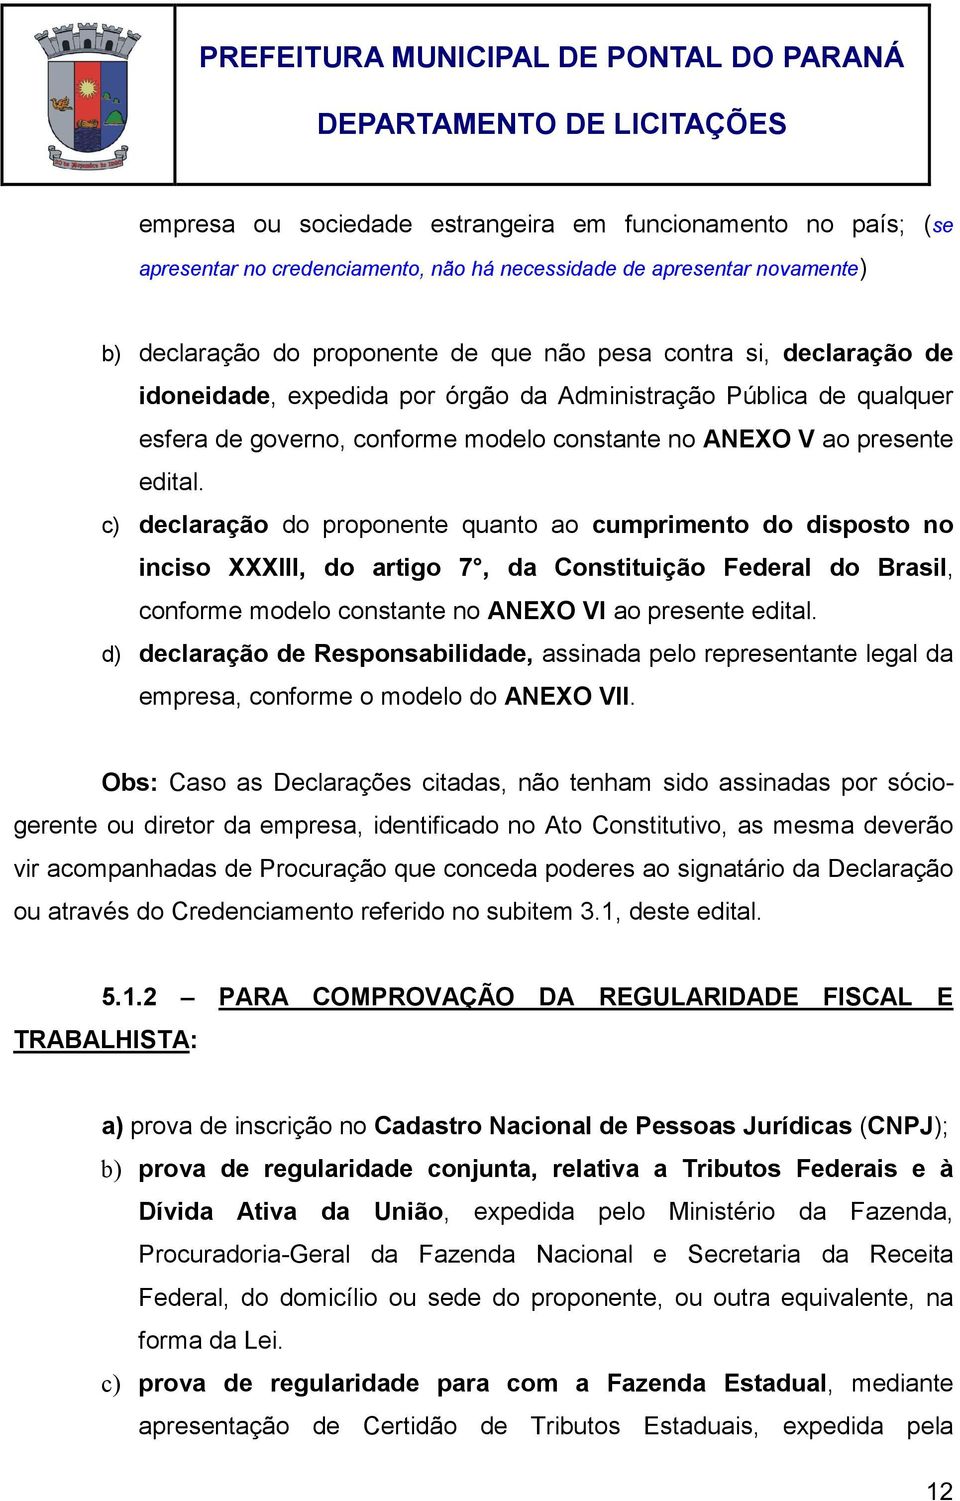 c) declaração do proponente quanto ao cumprimento do disposto no inciso XXXIII, do artigo 7, da Constituição Federal do Brasil, conforme modelo constante no ANEXO VI ao presente edital.